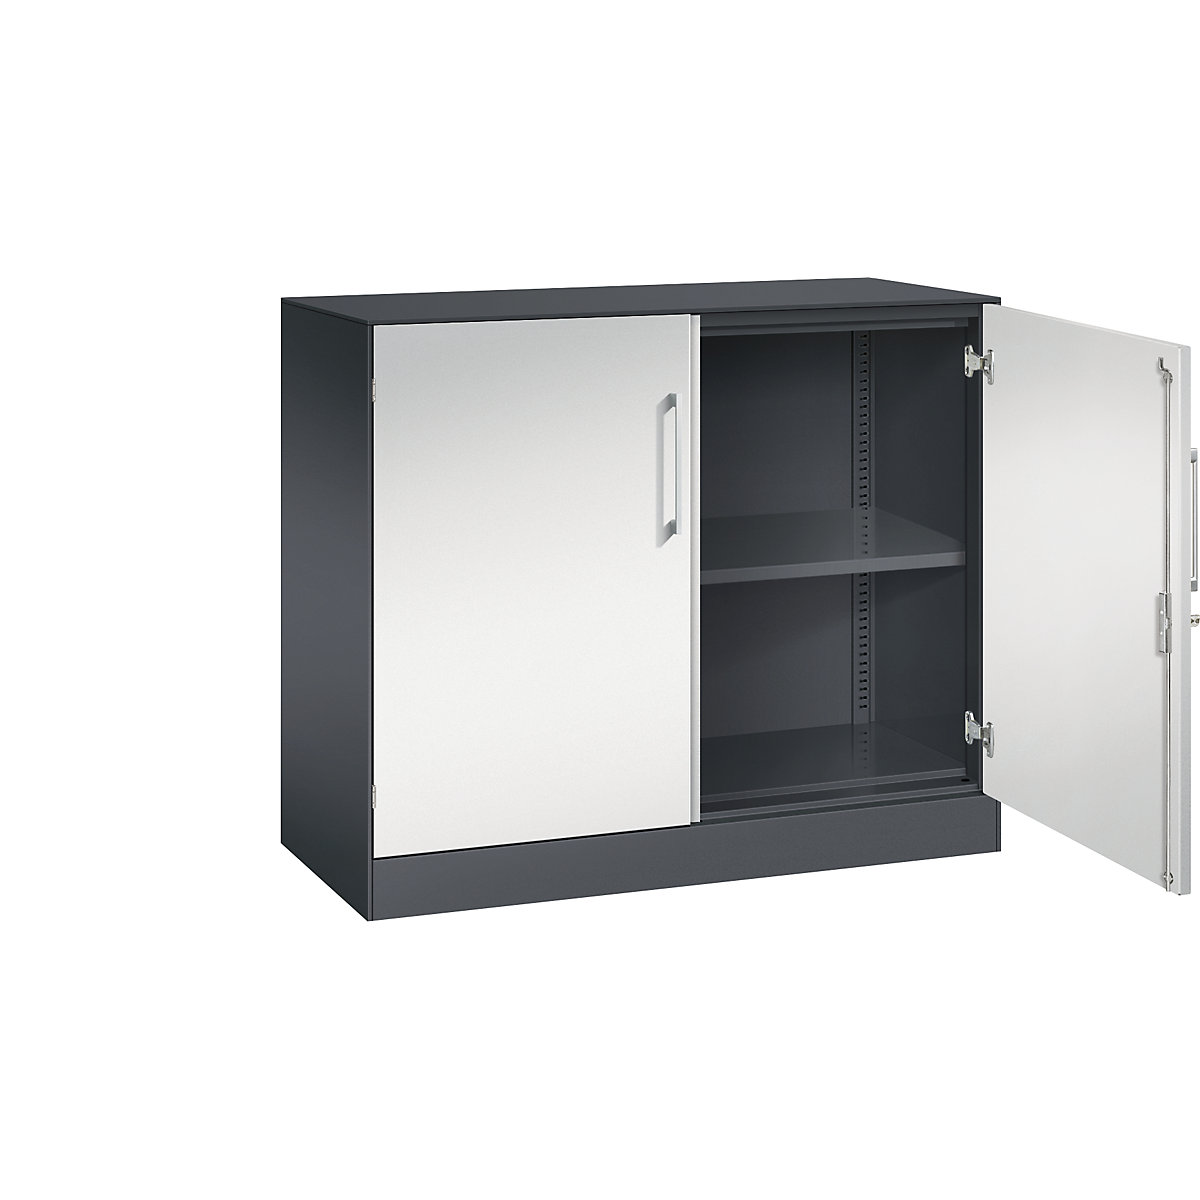 ASISTO double door cupboard, height 897 mm – C+P, width 1000 mm, 1 shelf, black grey/light grey-6